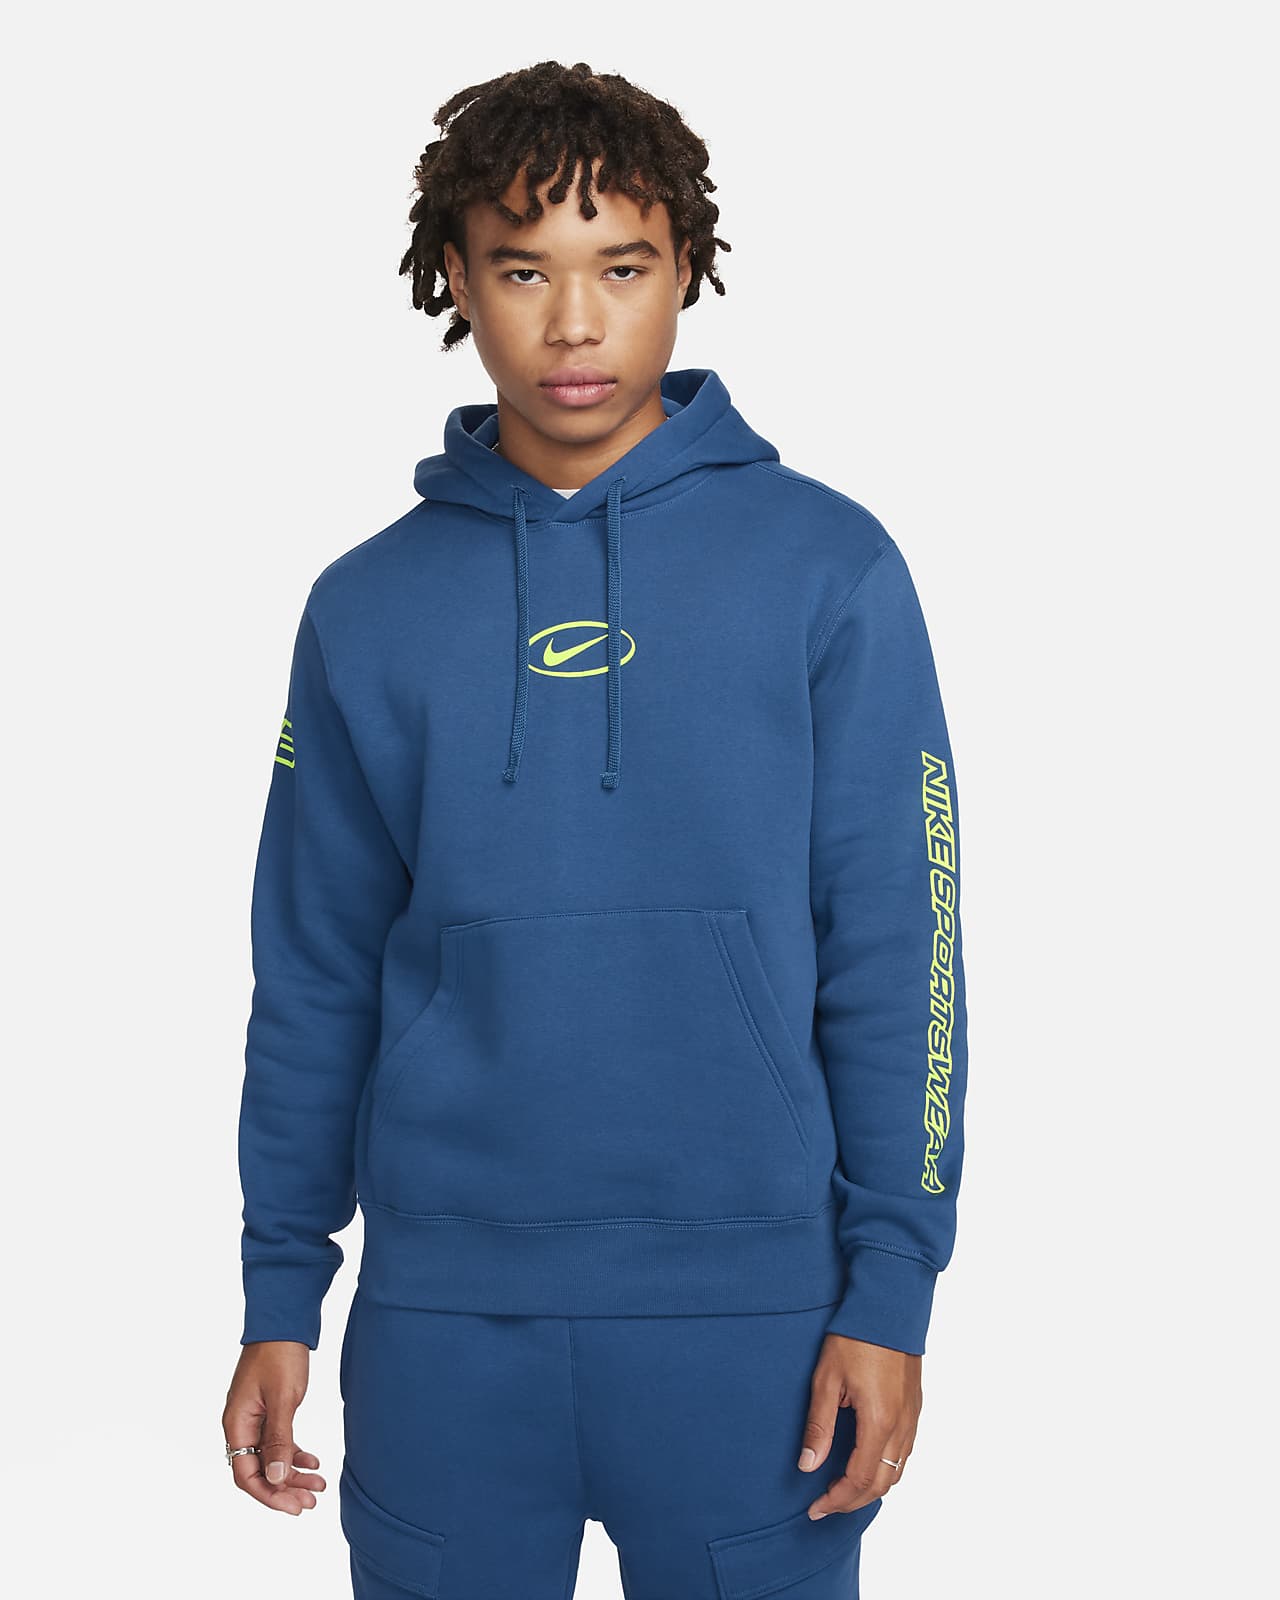 Nike Sportswear Erkek Kapüşonlu Sweatshirt'ü